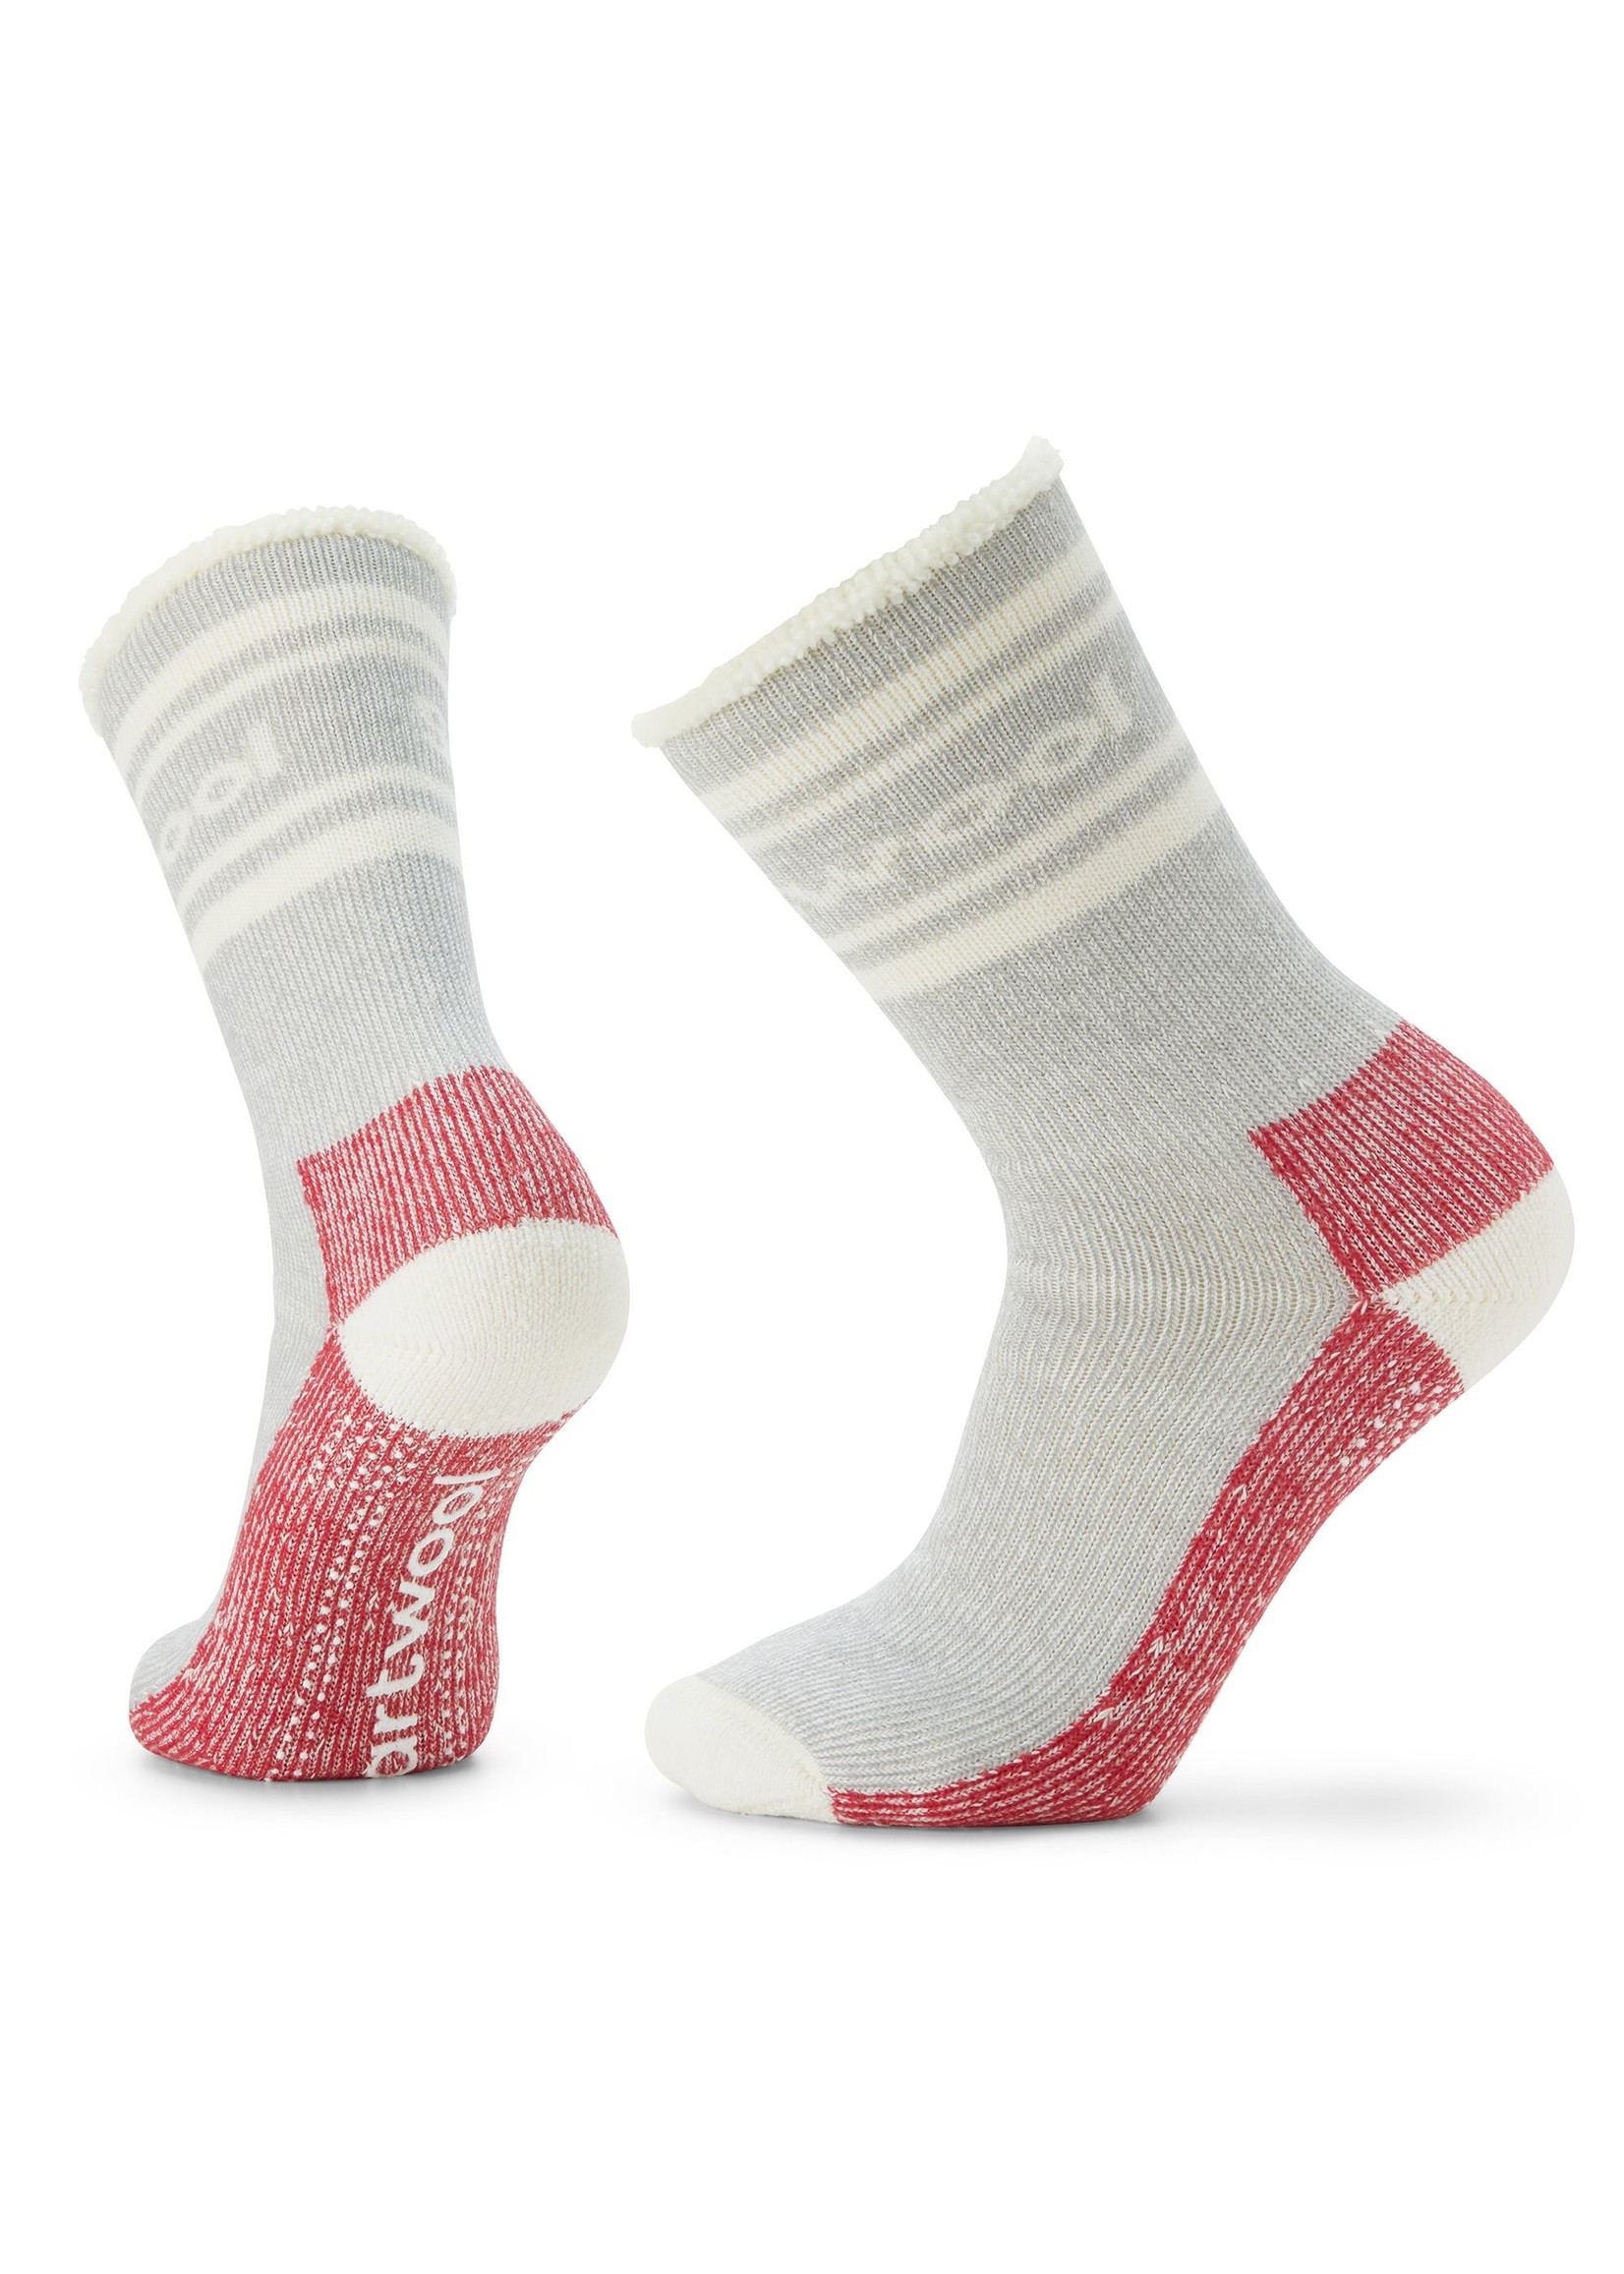 SMARTWOOL Women's indoor slipper socks